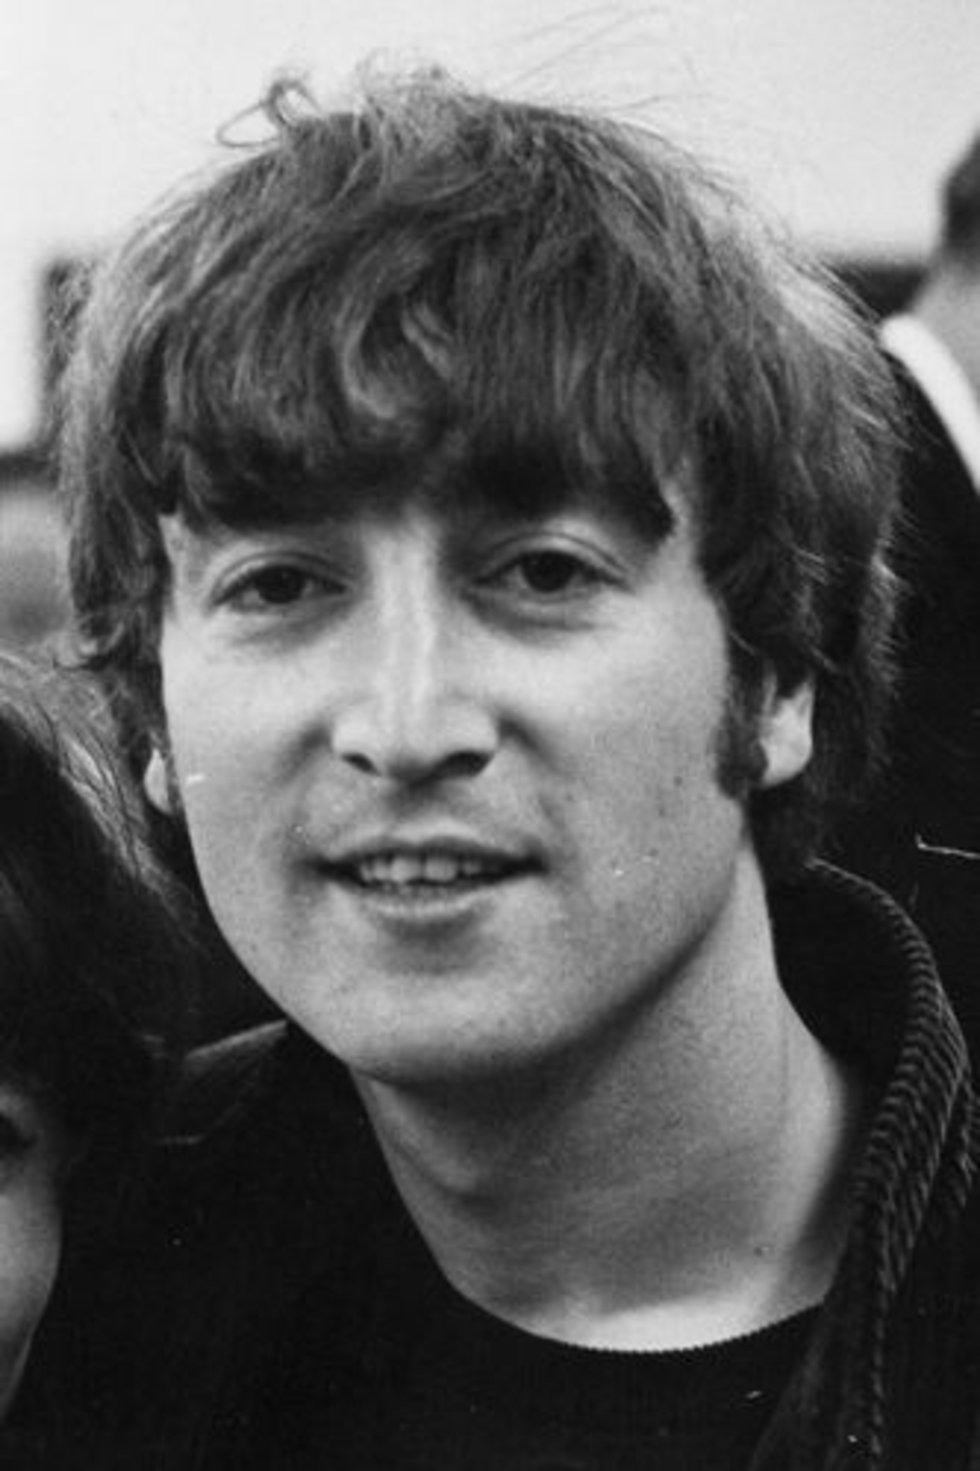 John Lennon #22